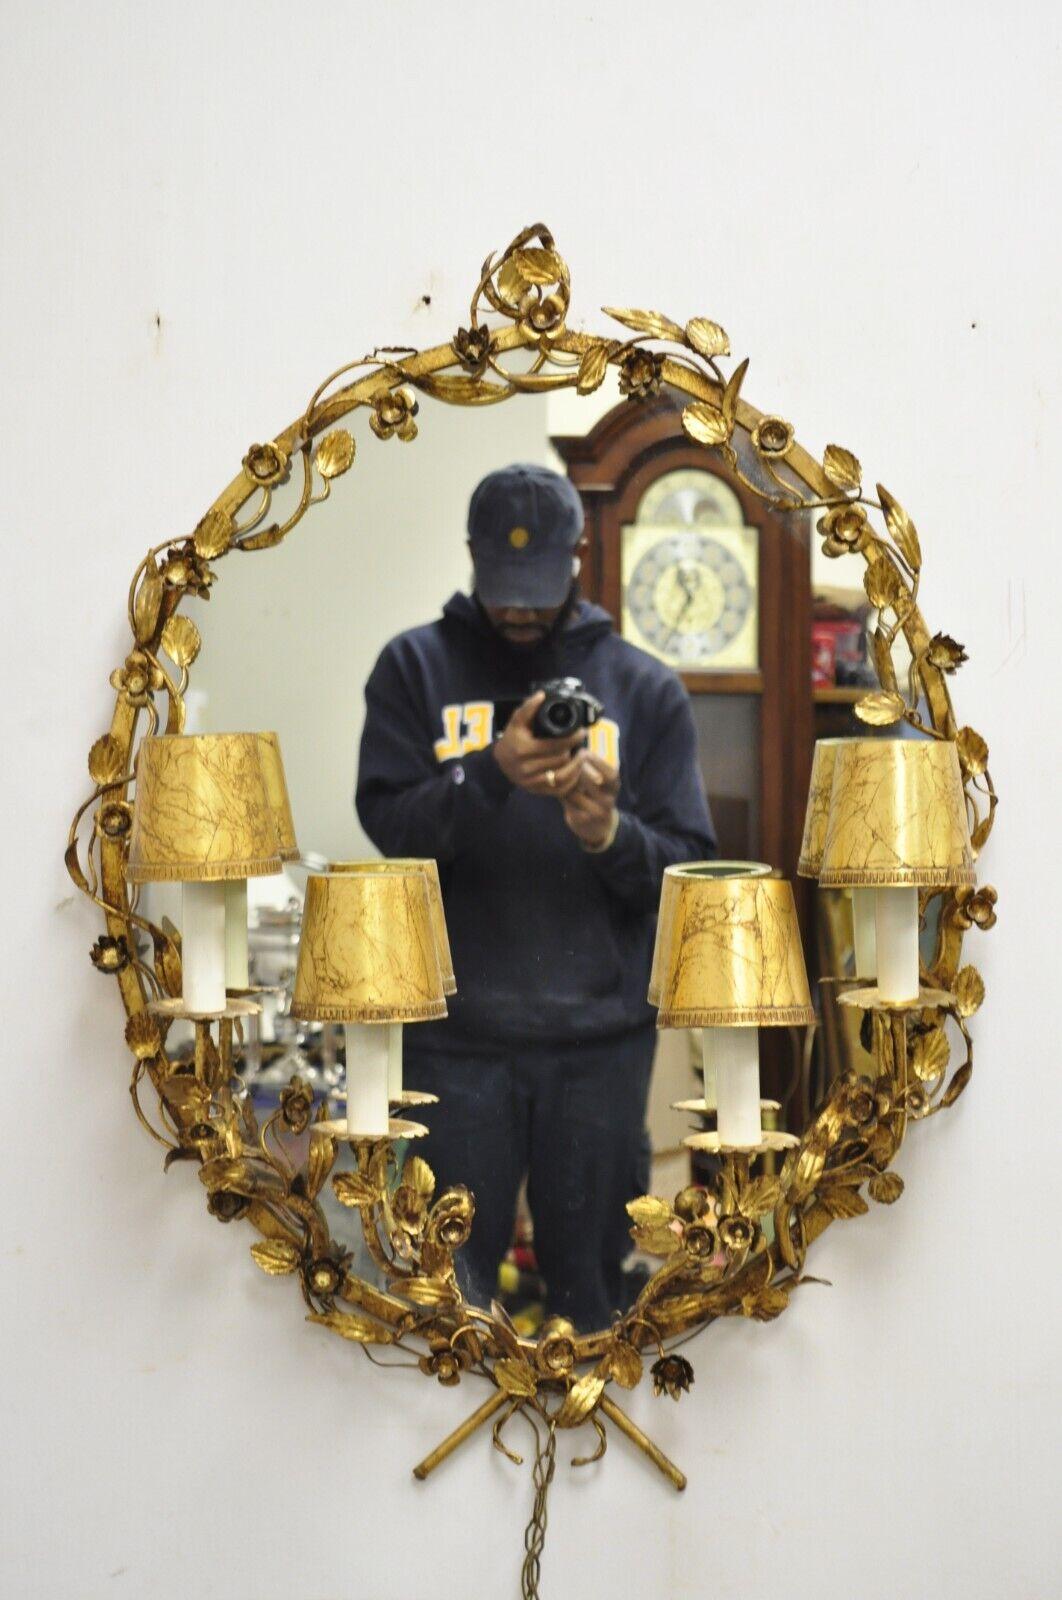 Vintage Italian Hollywood Regency Gold Gilt Iron Oval Floral Wall Mirror with Sconces. L'article présente un miroir central ovale, (4) appliques électrifiées, des cadres en fer doré, des accents feuillus, un très bel article vintage, un style et une